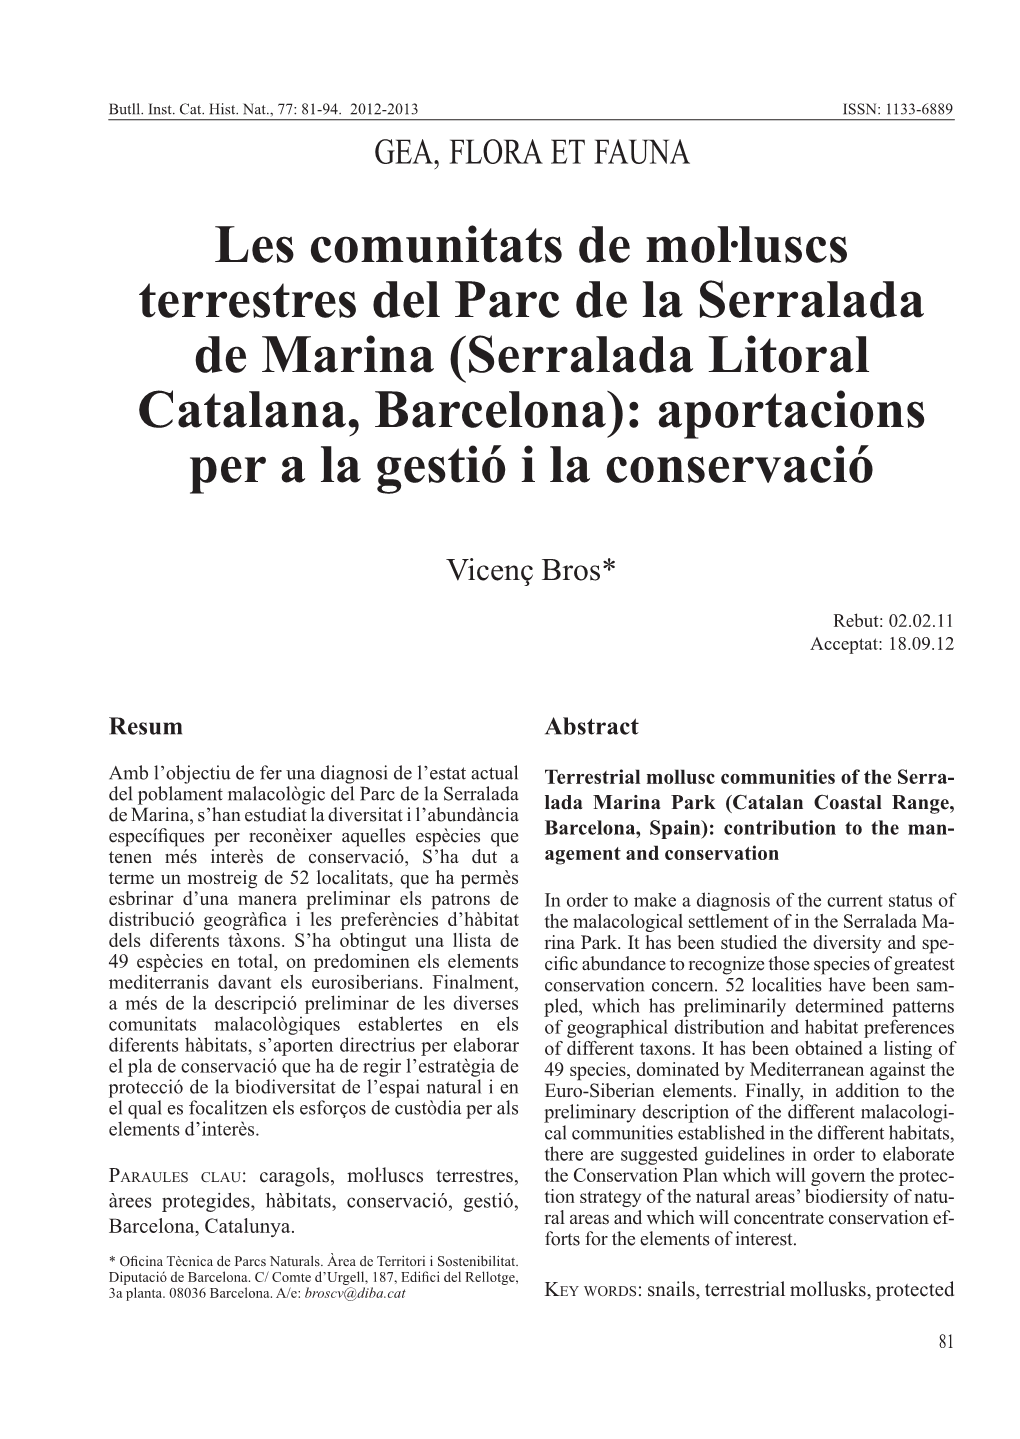 Serralada Litoral Catalana, Barcelona): Aportacions Per a La Gestió I La Conservació